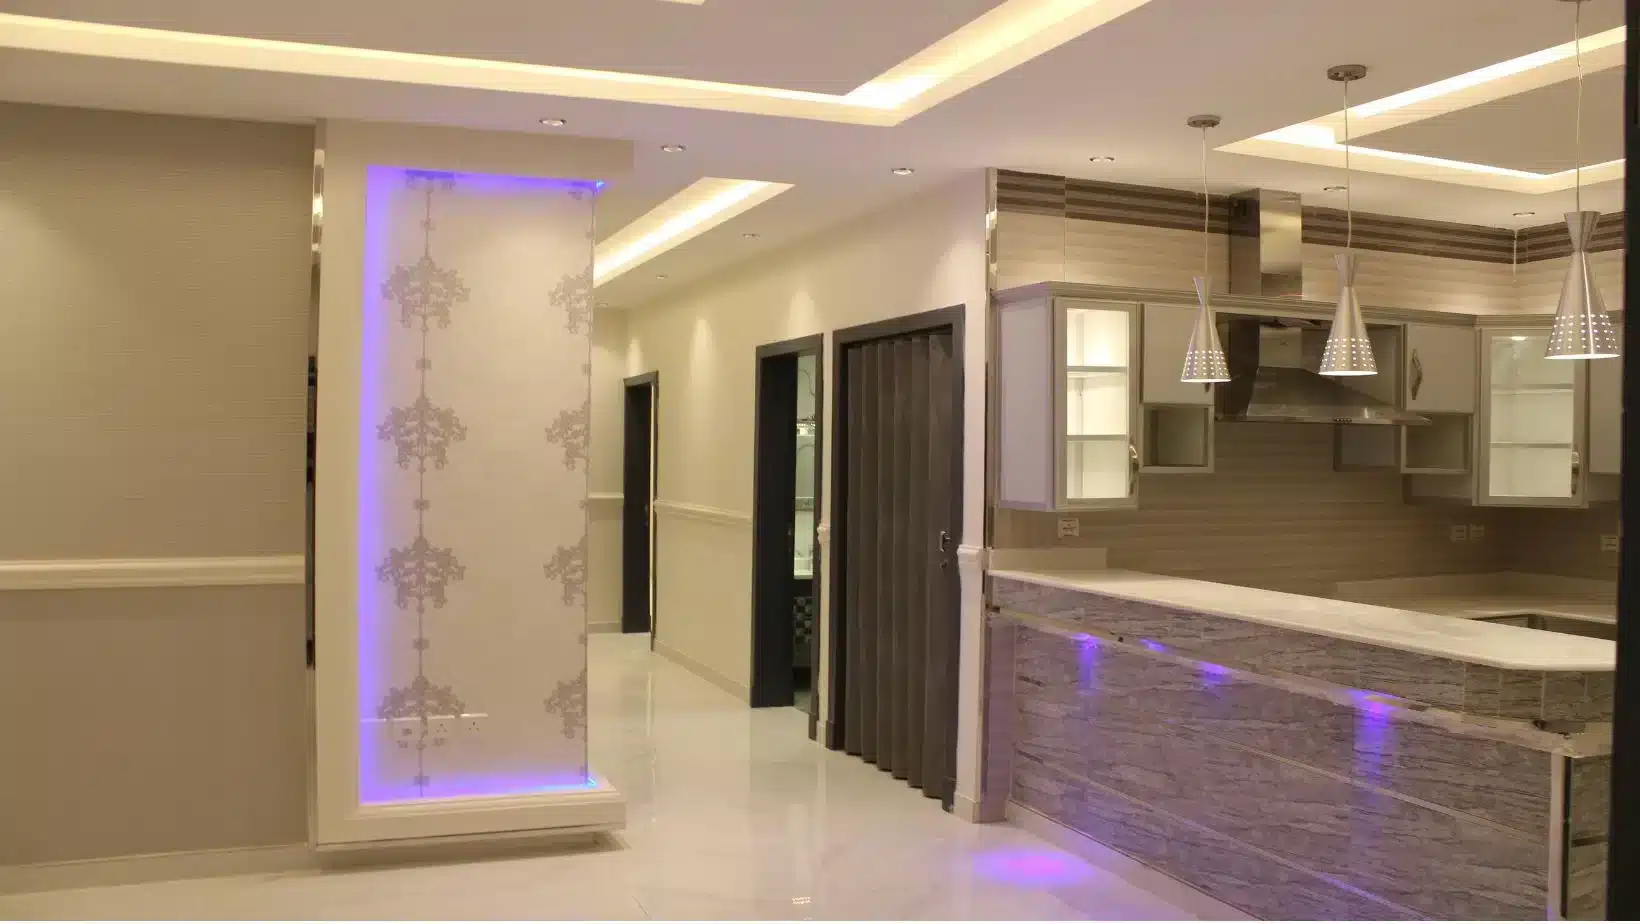 شقق التحلية للإيجار بالعليا الرياض. Tahlia apartments for rent in Olaya, Riyadh.